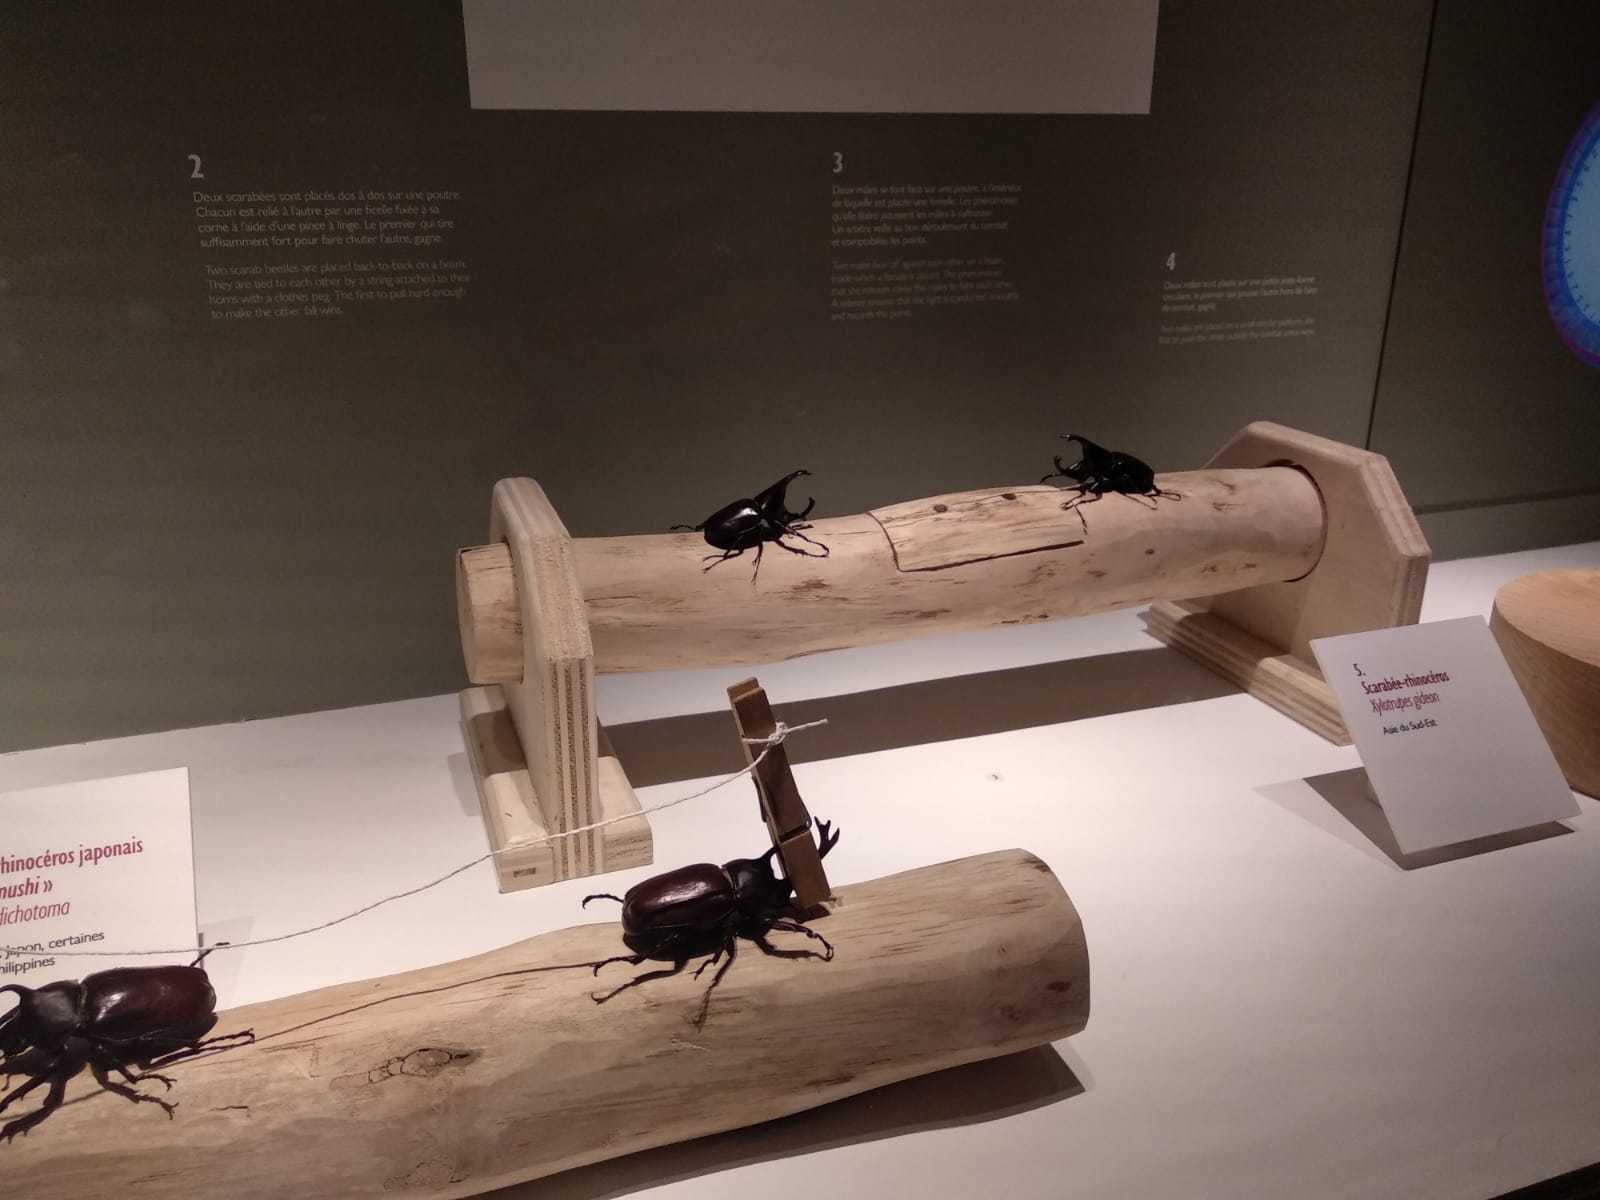 Exhibition, Coléoptères, insectes extraordinaires, Musée des Confluences, Lyon: 21 December 2018-28 June 2020